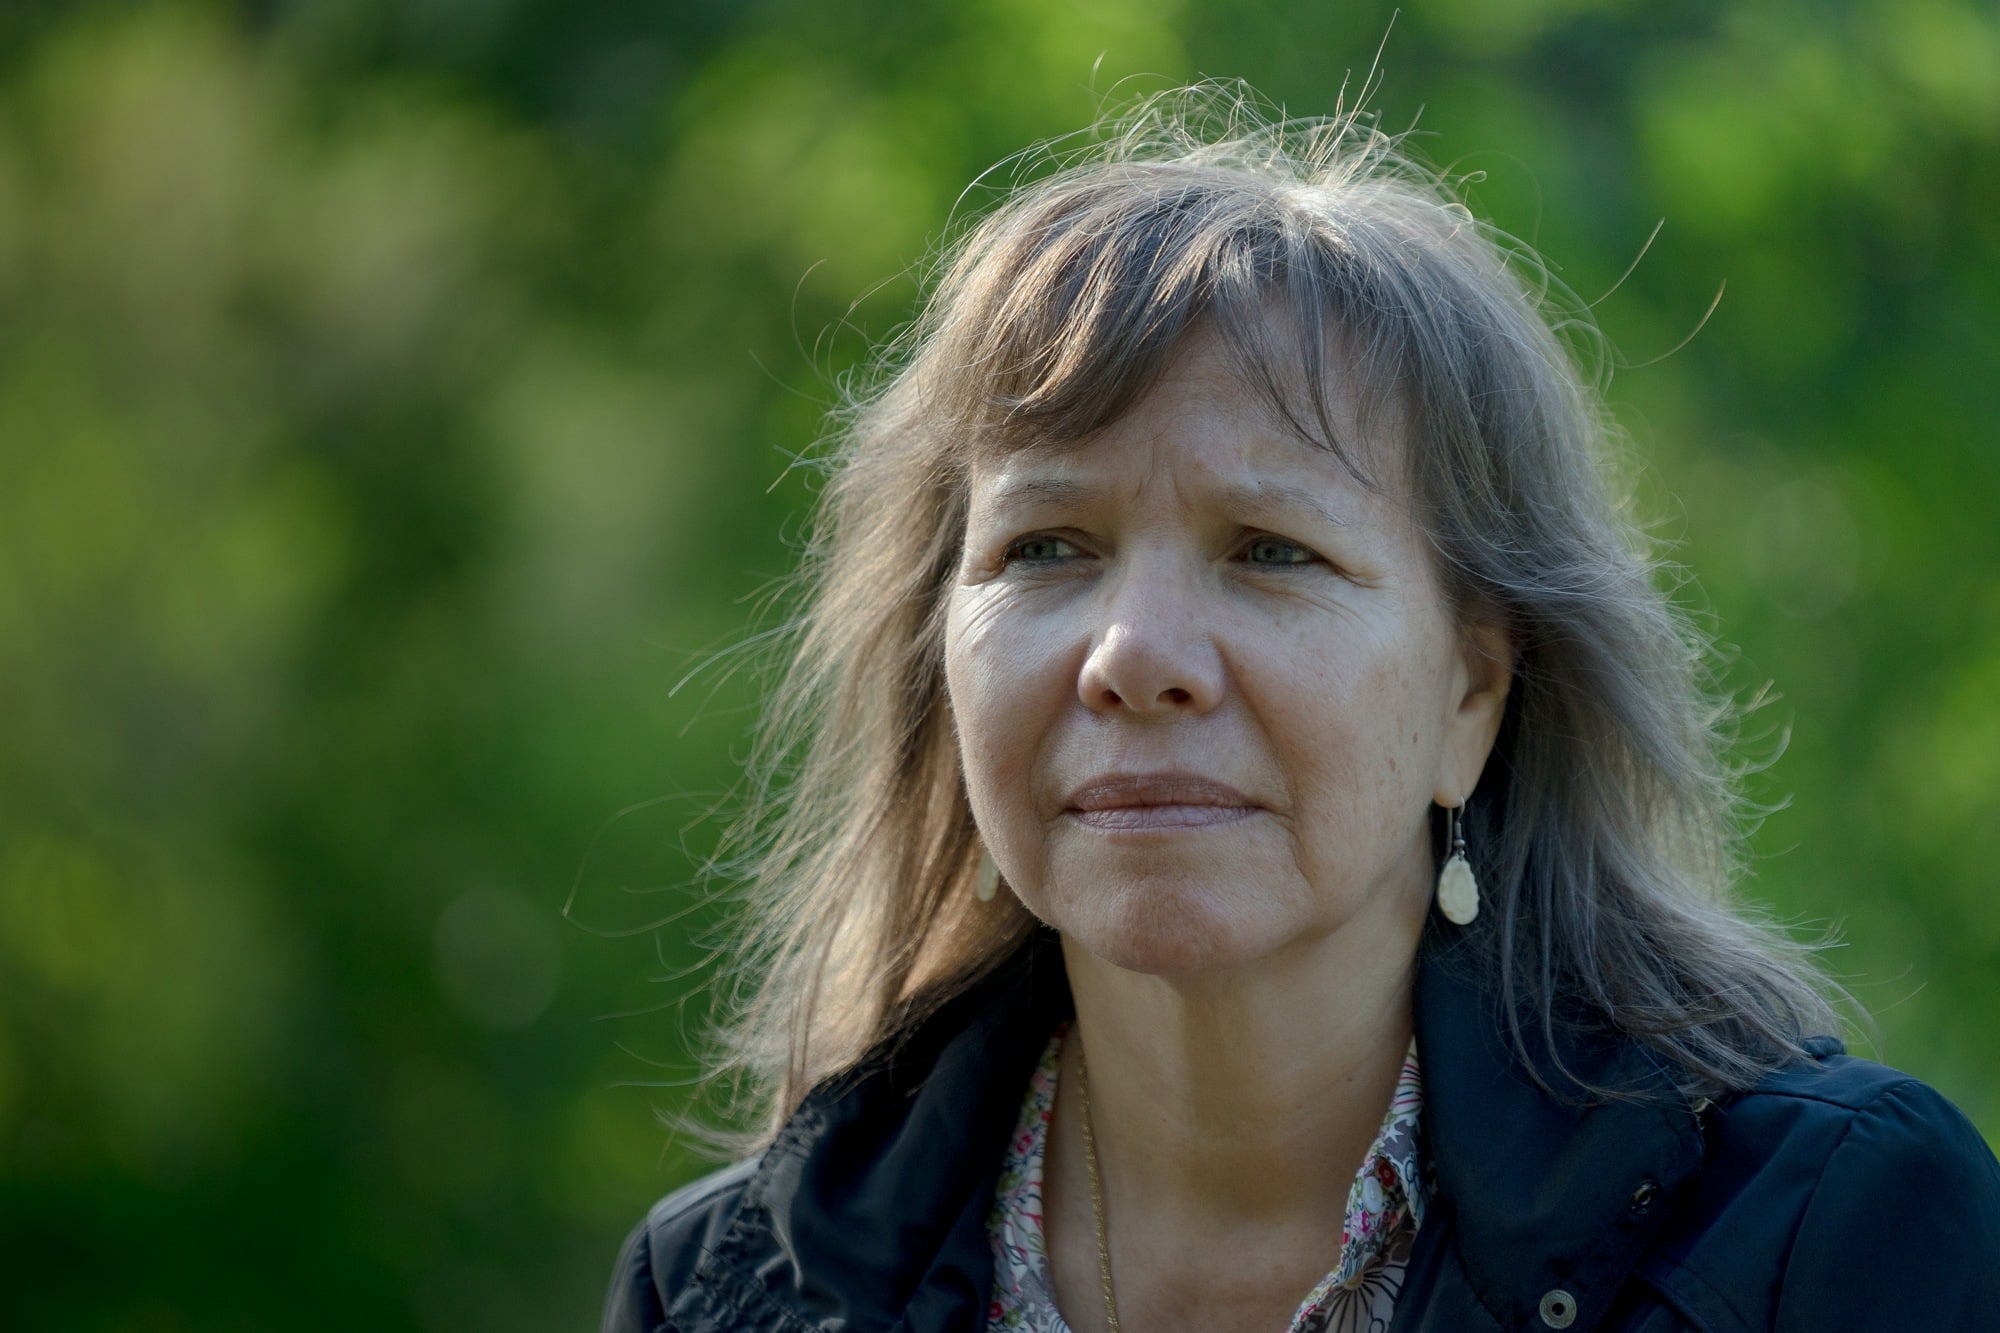 Katsi’tsakwas Ellen Gabriel, militante des droits des Autochtones et de la protection de l’environnement